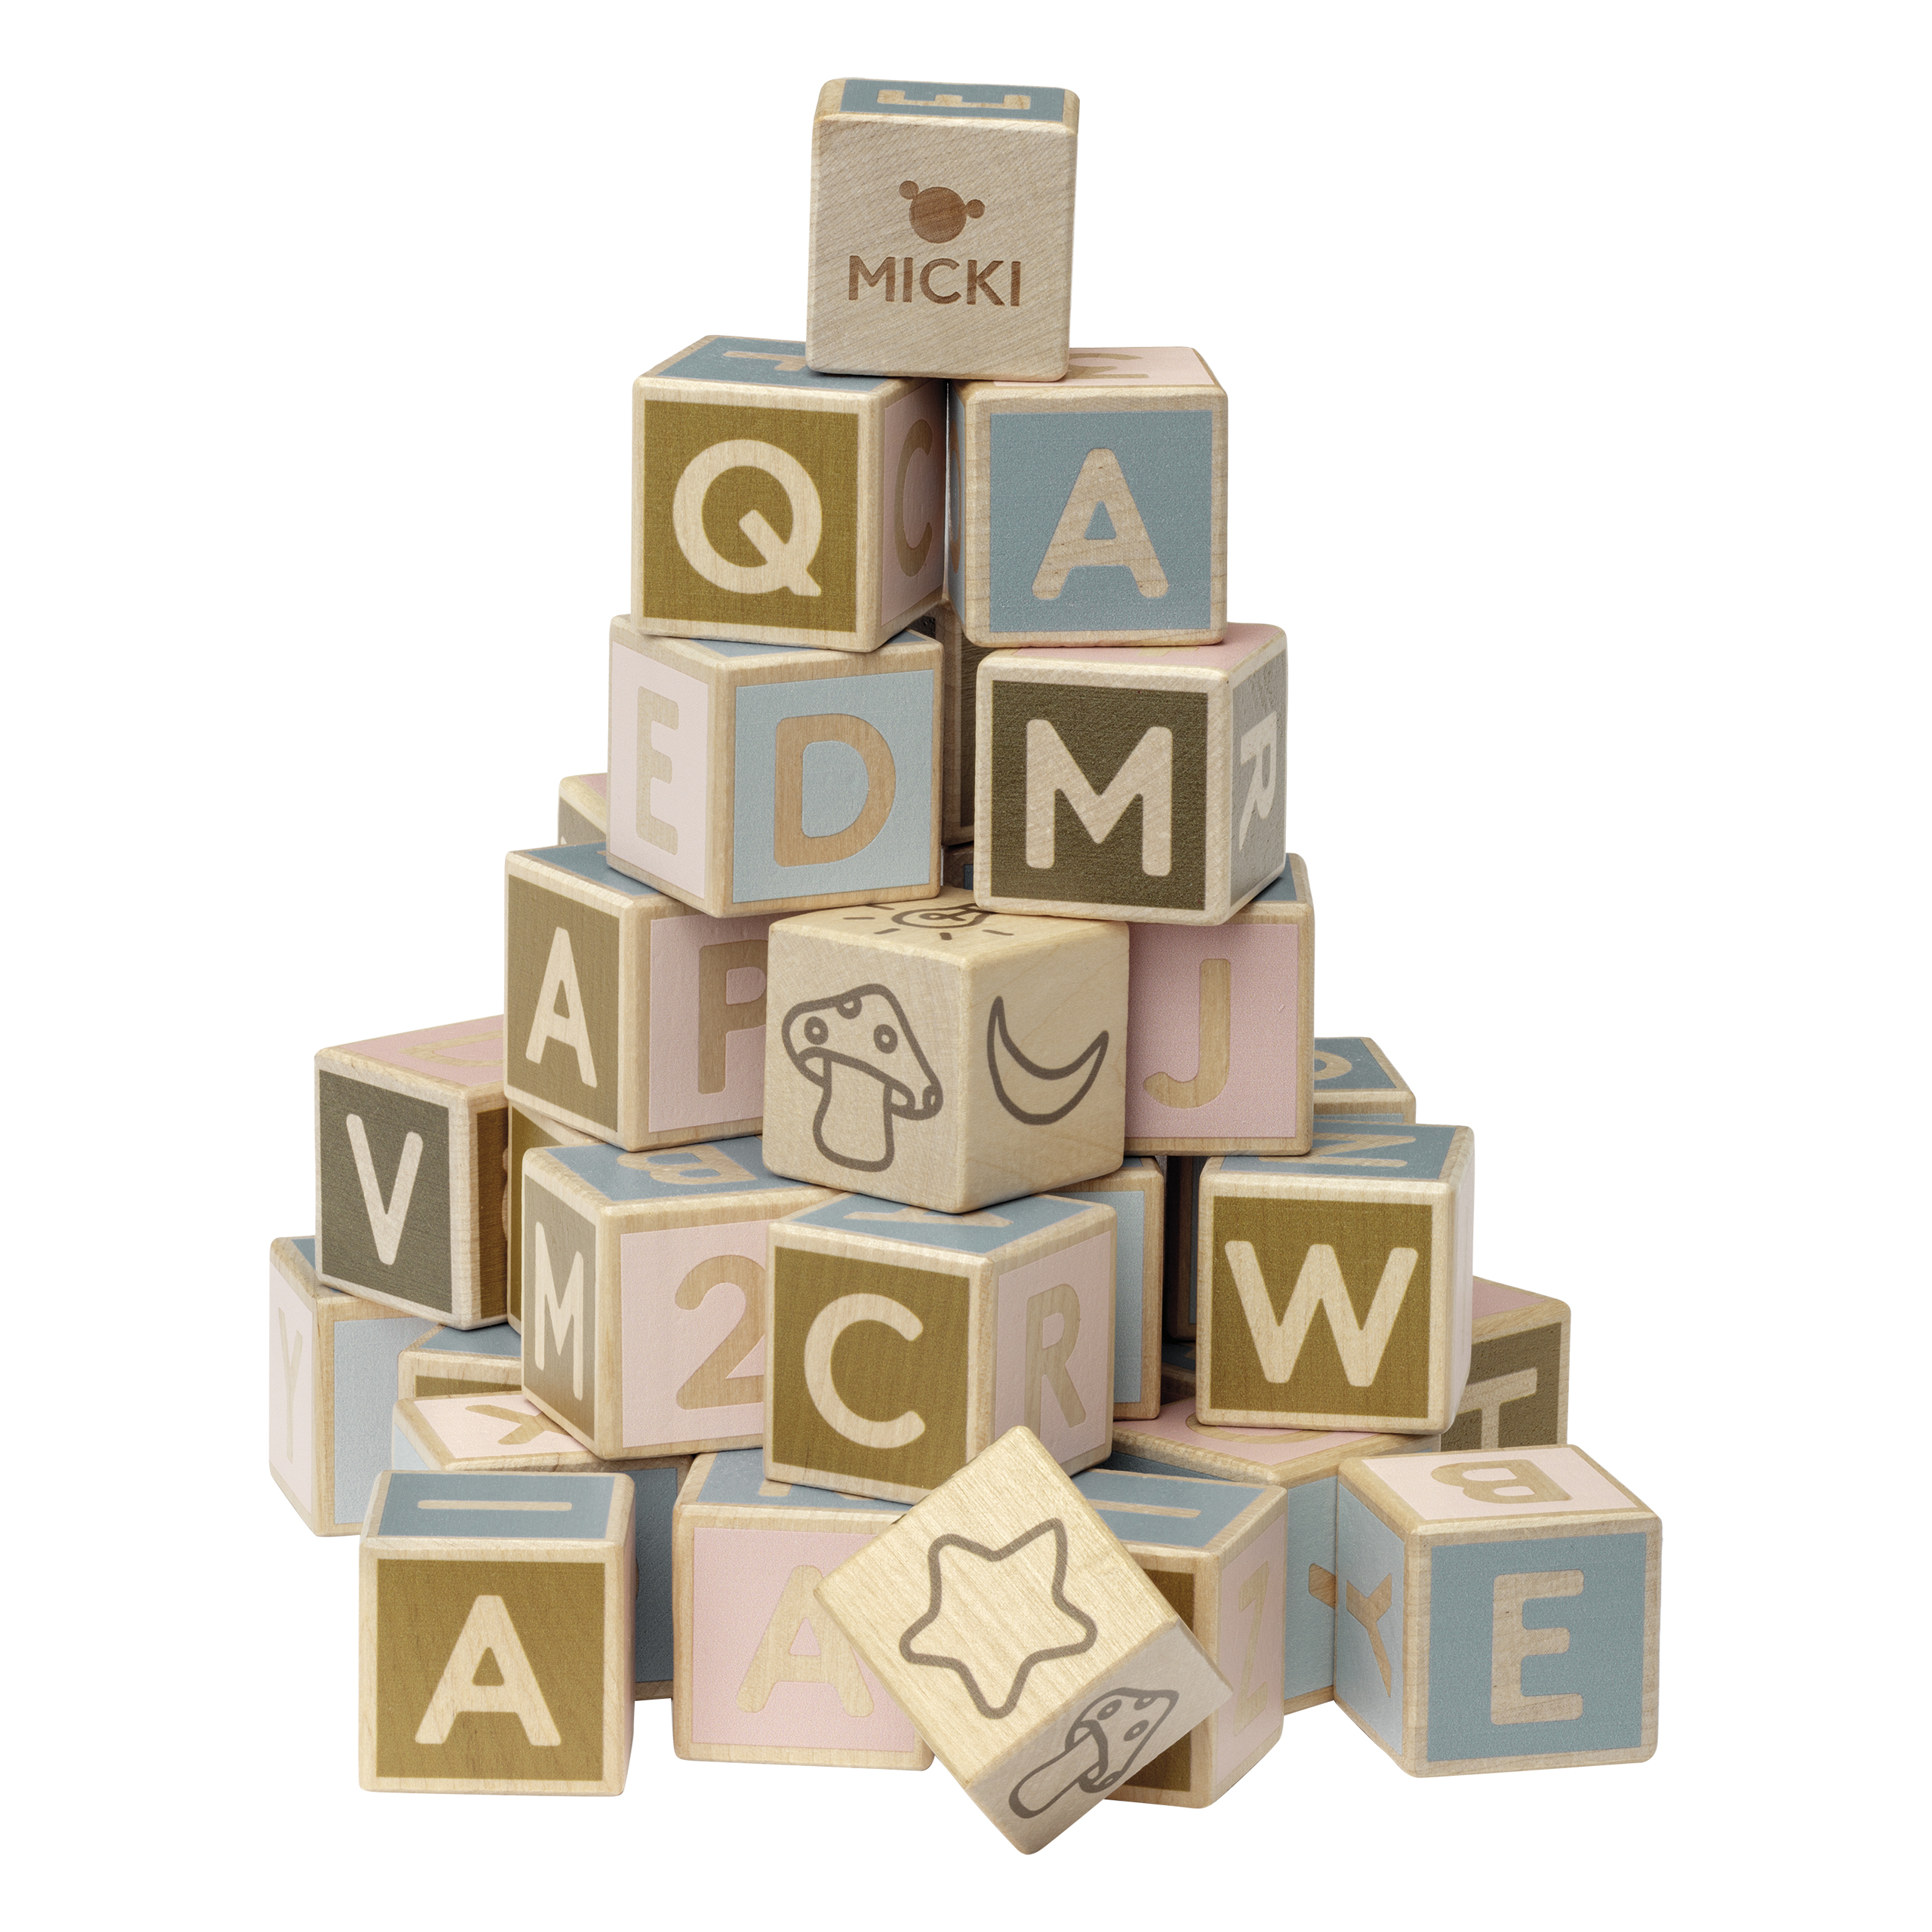 Wooden toys micki alphabet blocks 36 pcs